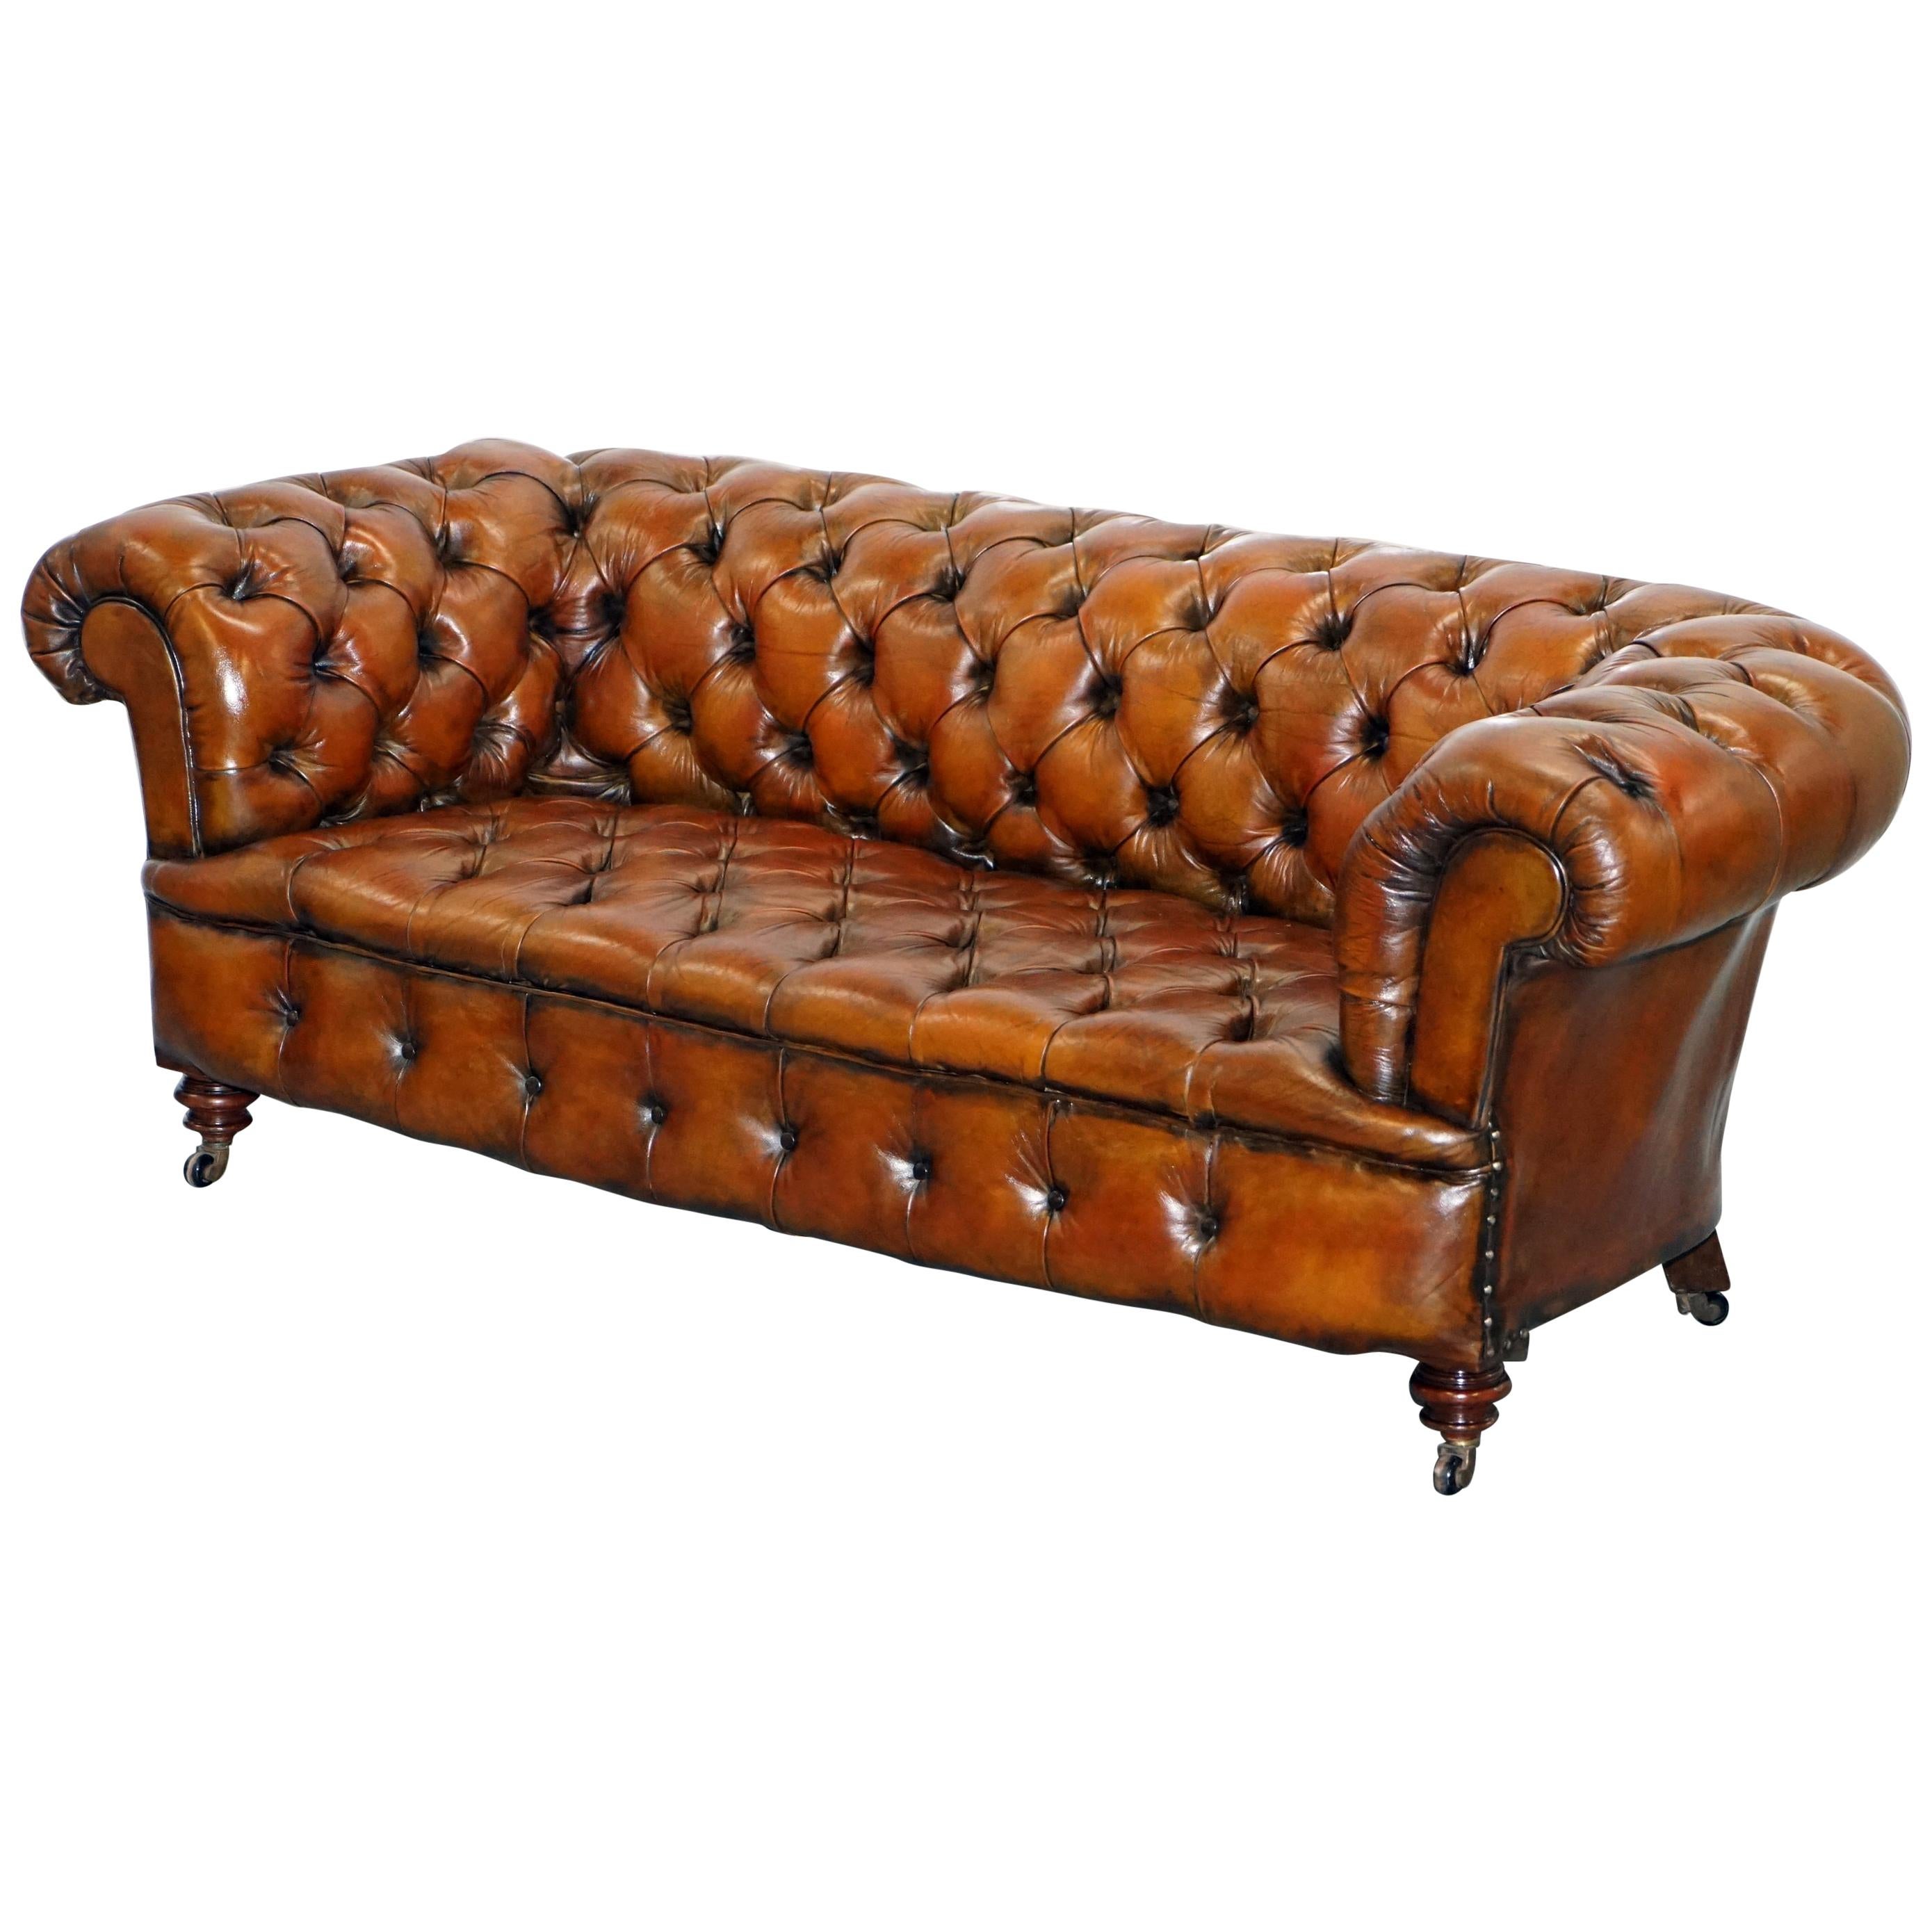 Restauriertes viktorianisches Sofa aus braunem Chesterfield-Leder, 1890 Cornelius V. Smith Stempel